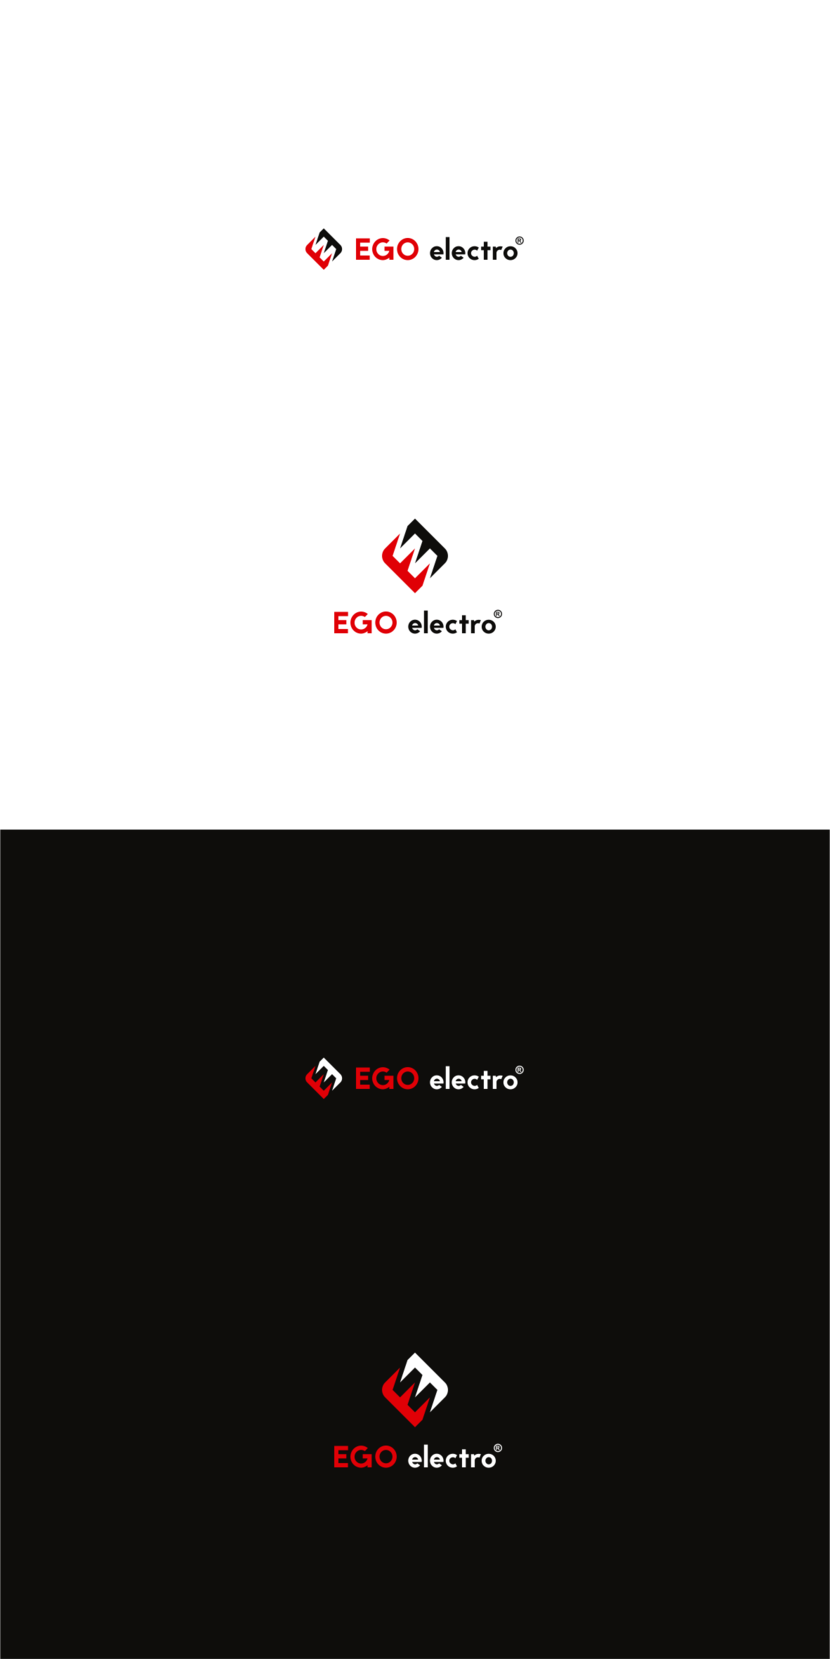 EGO electro - Разработка логотипа для производителя электротехнического оборудования